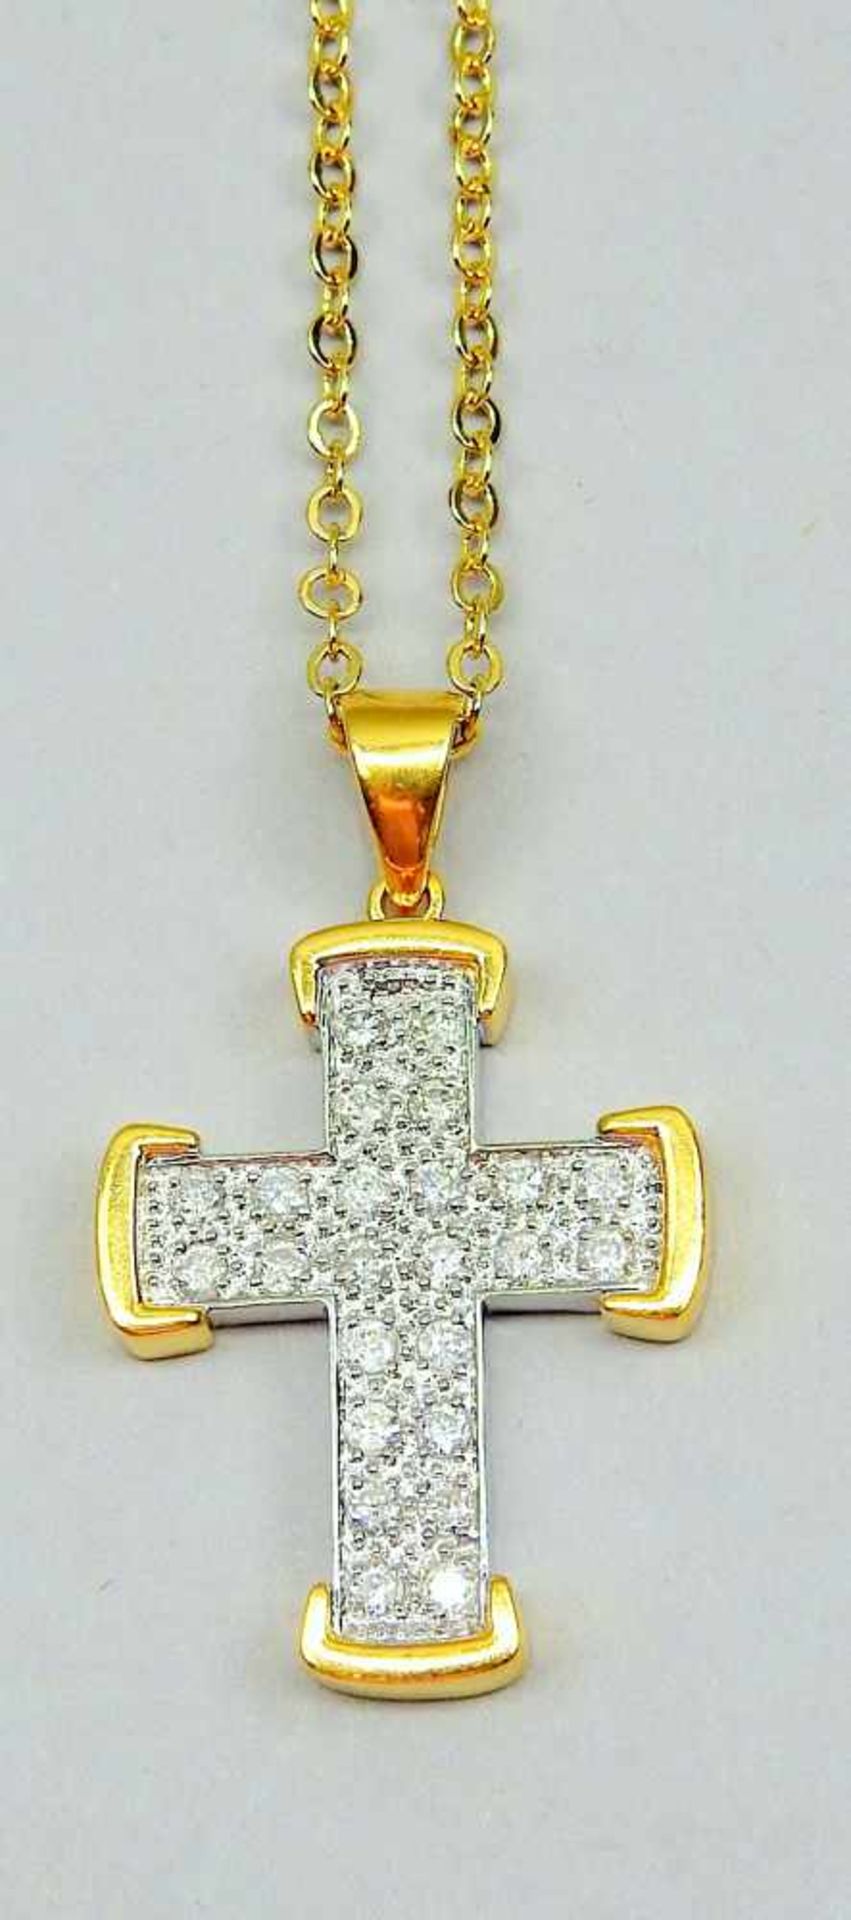 Diamant-Kreuz18 K. bicolor Weißgold/Gelbgold. Goldenes Kreuz besetzt mit Diamanten von insgesamt ca. - Image 2 of 2